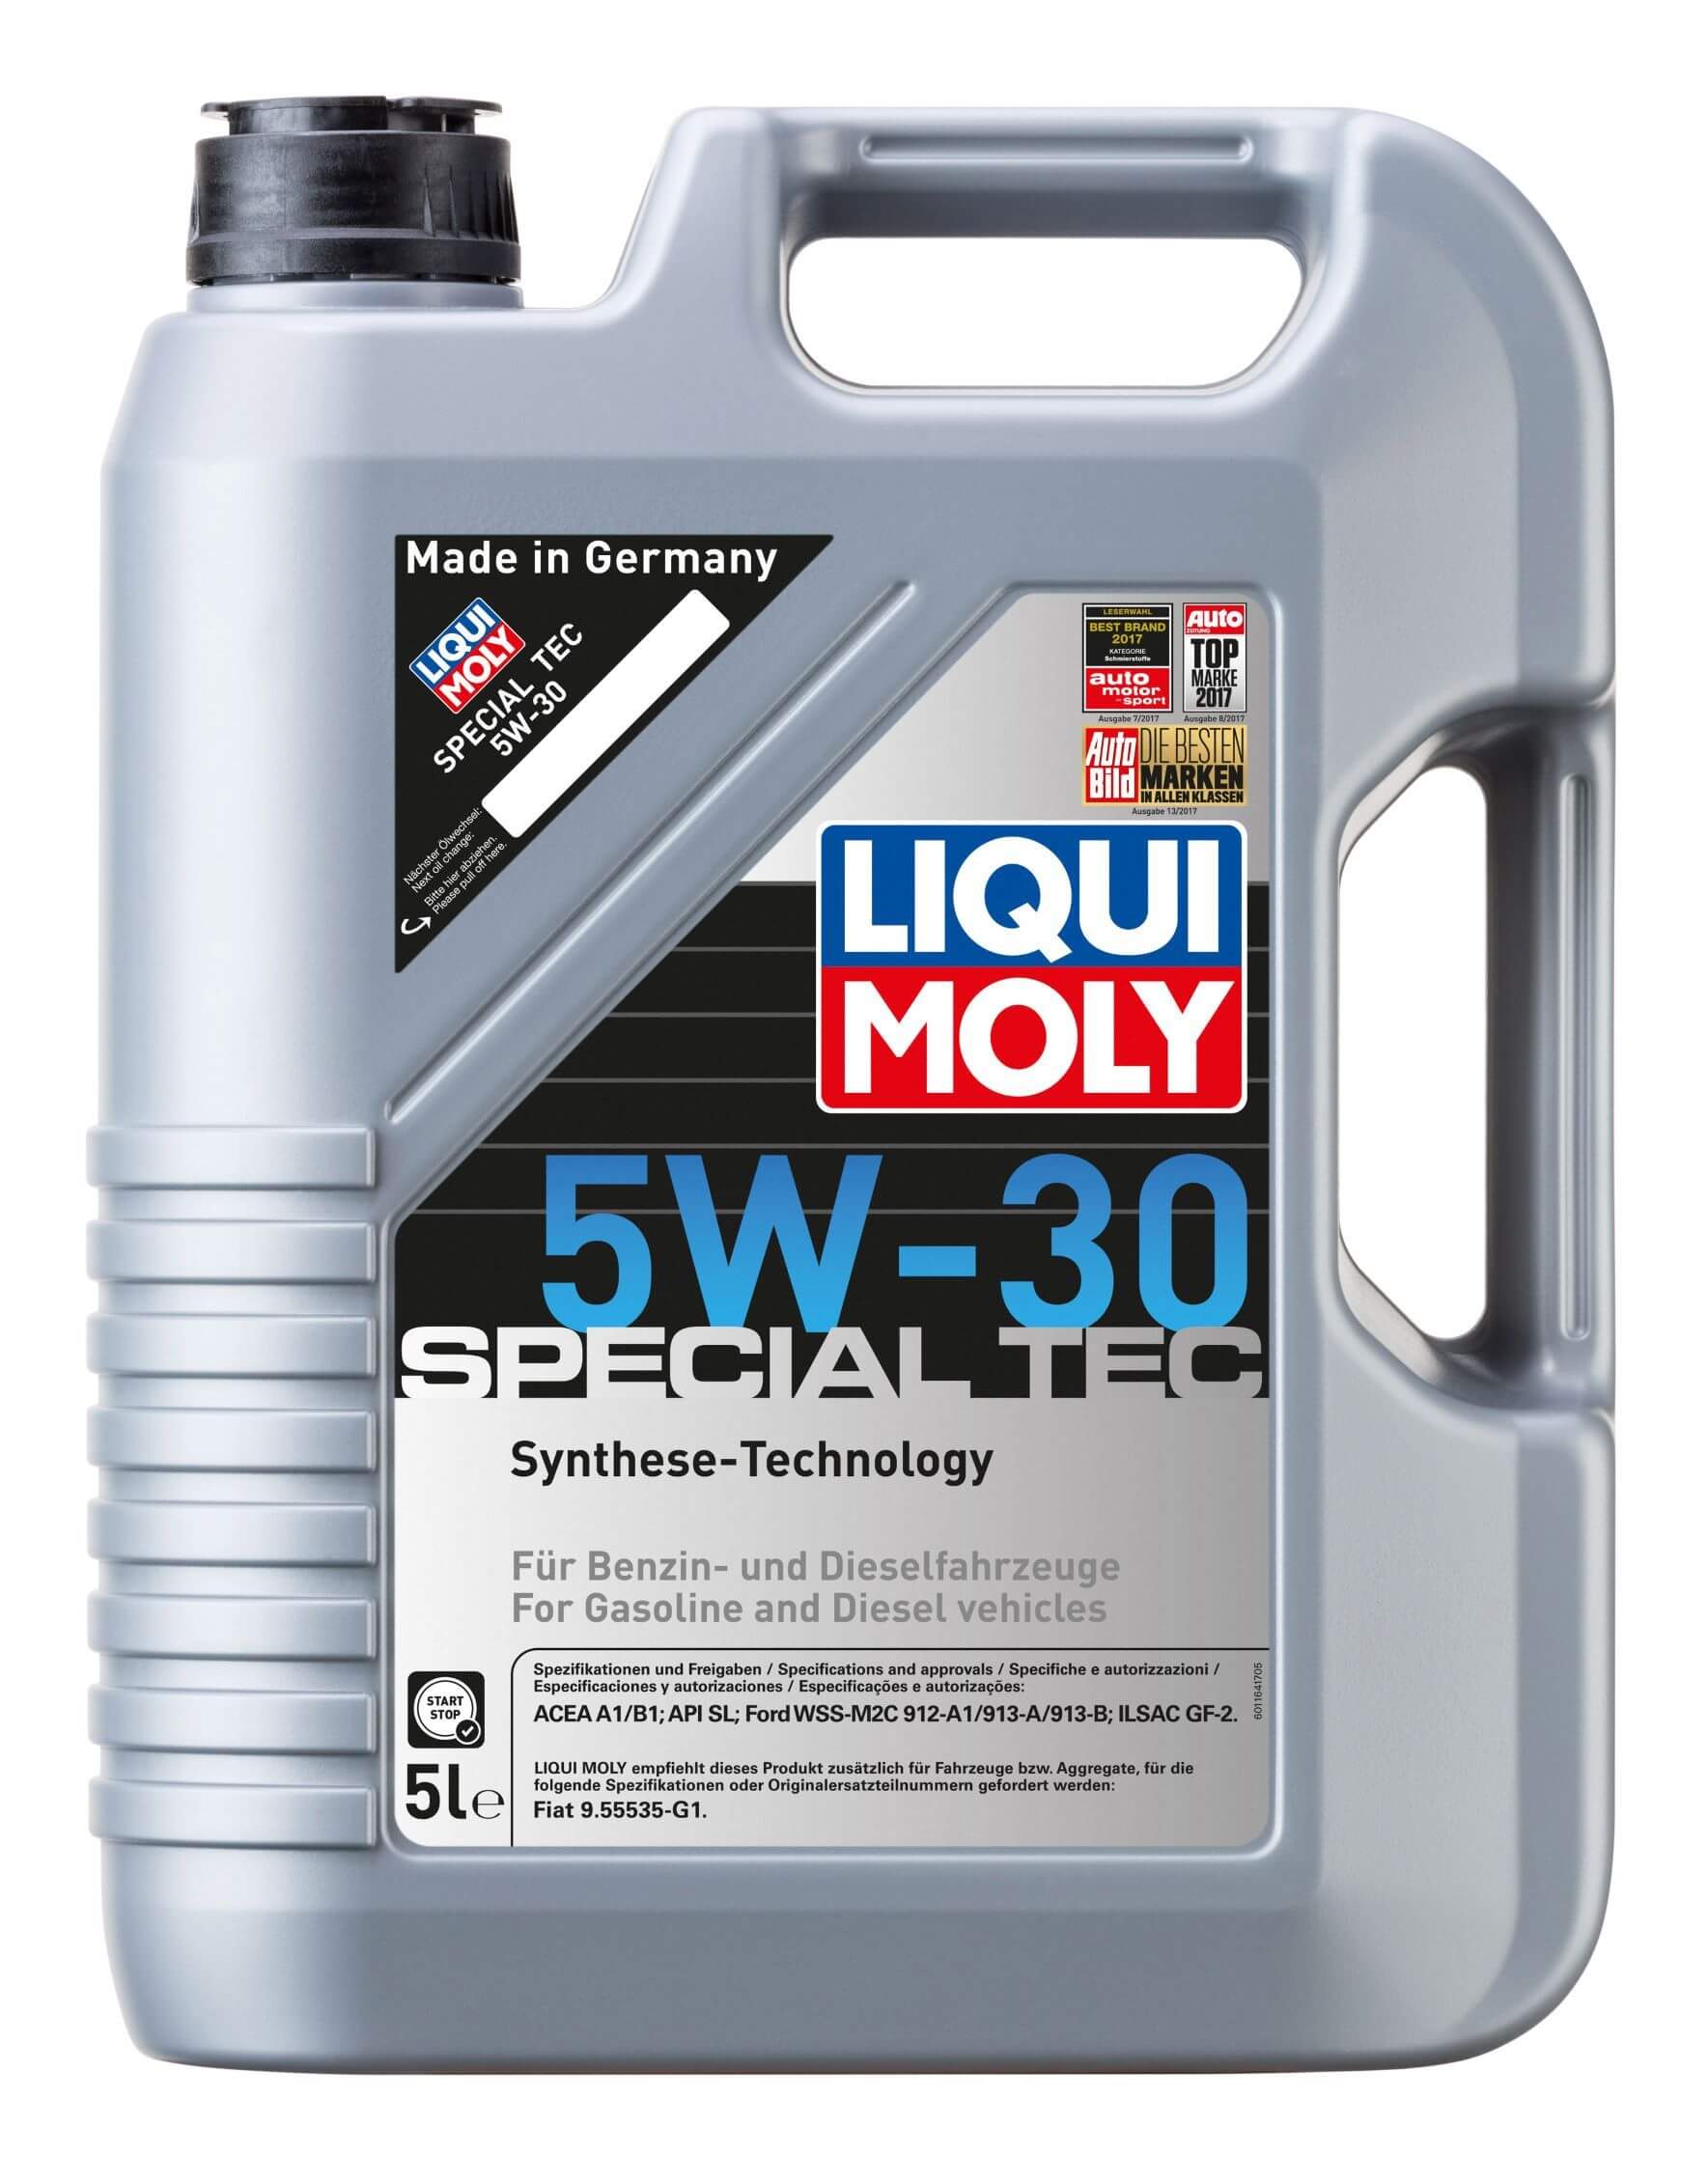 Moottoriöljy Special Tec 5W-30, 5 l, Liqui Moly